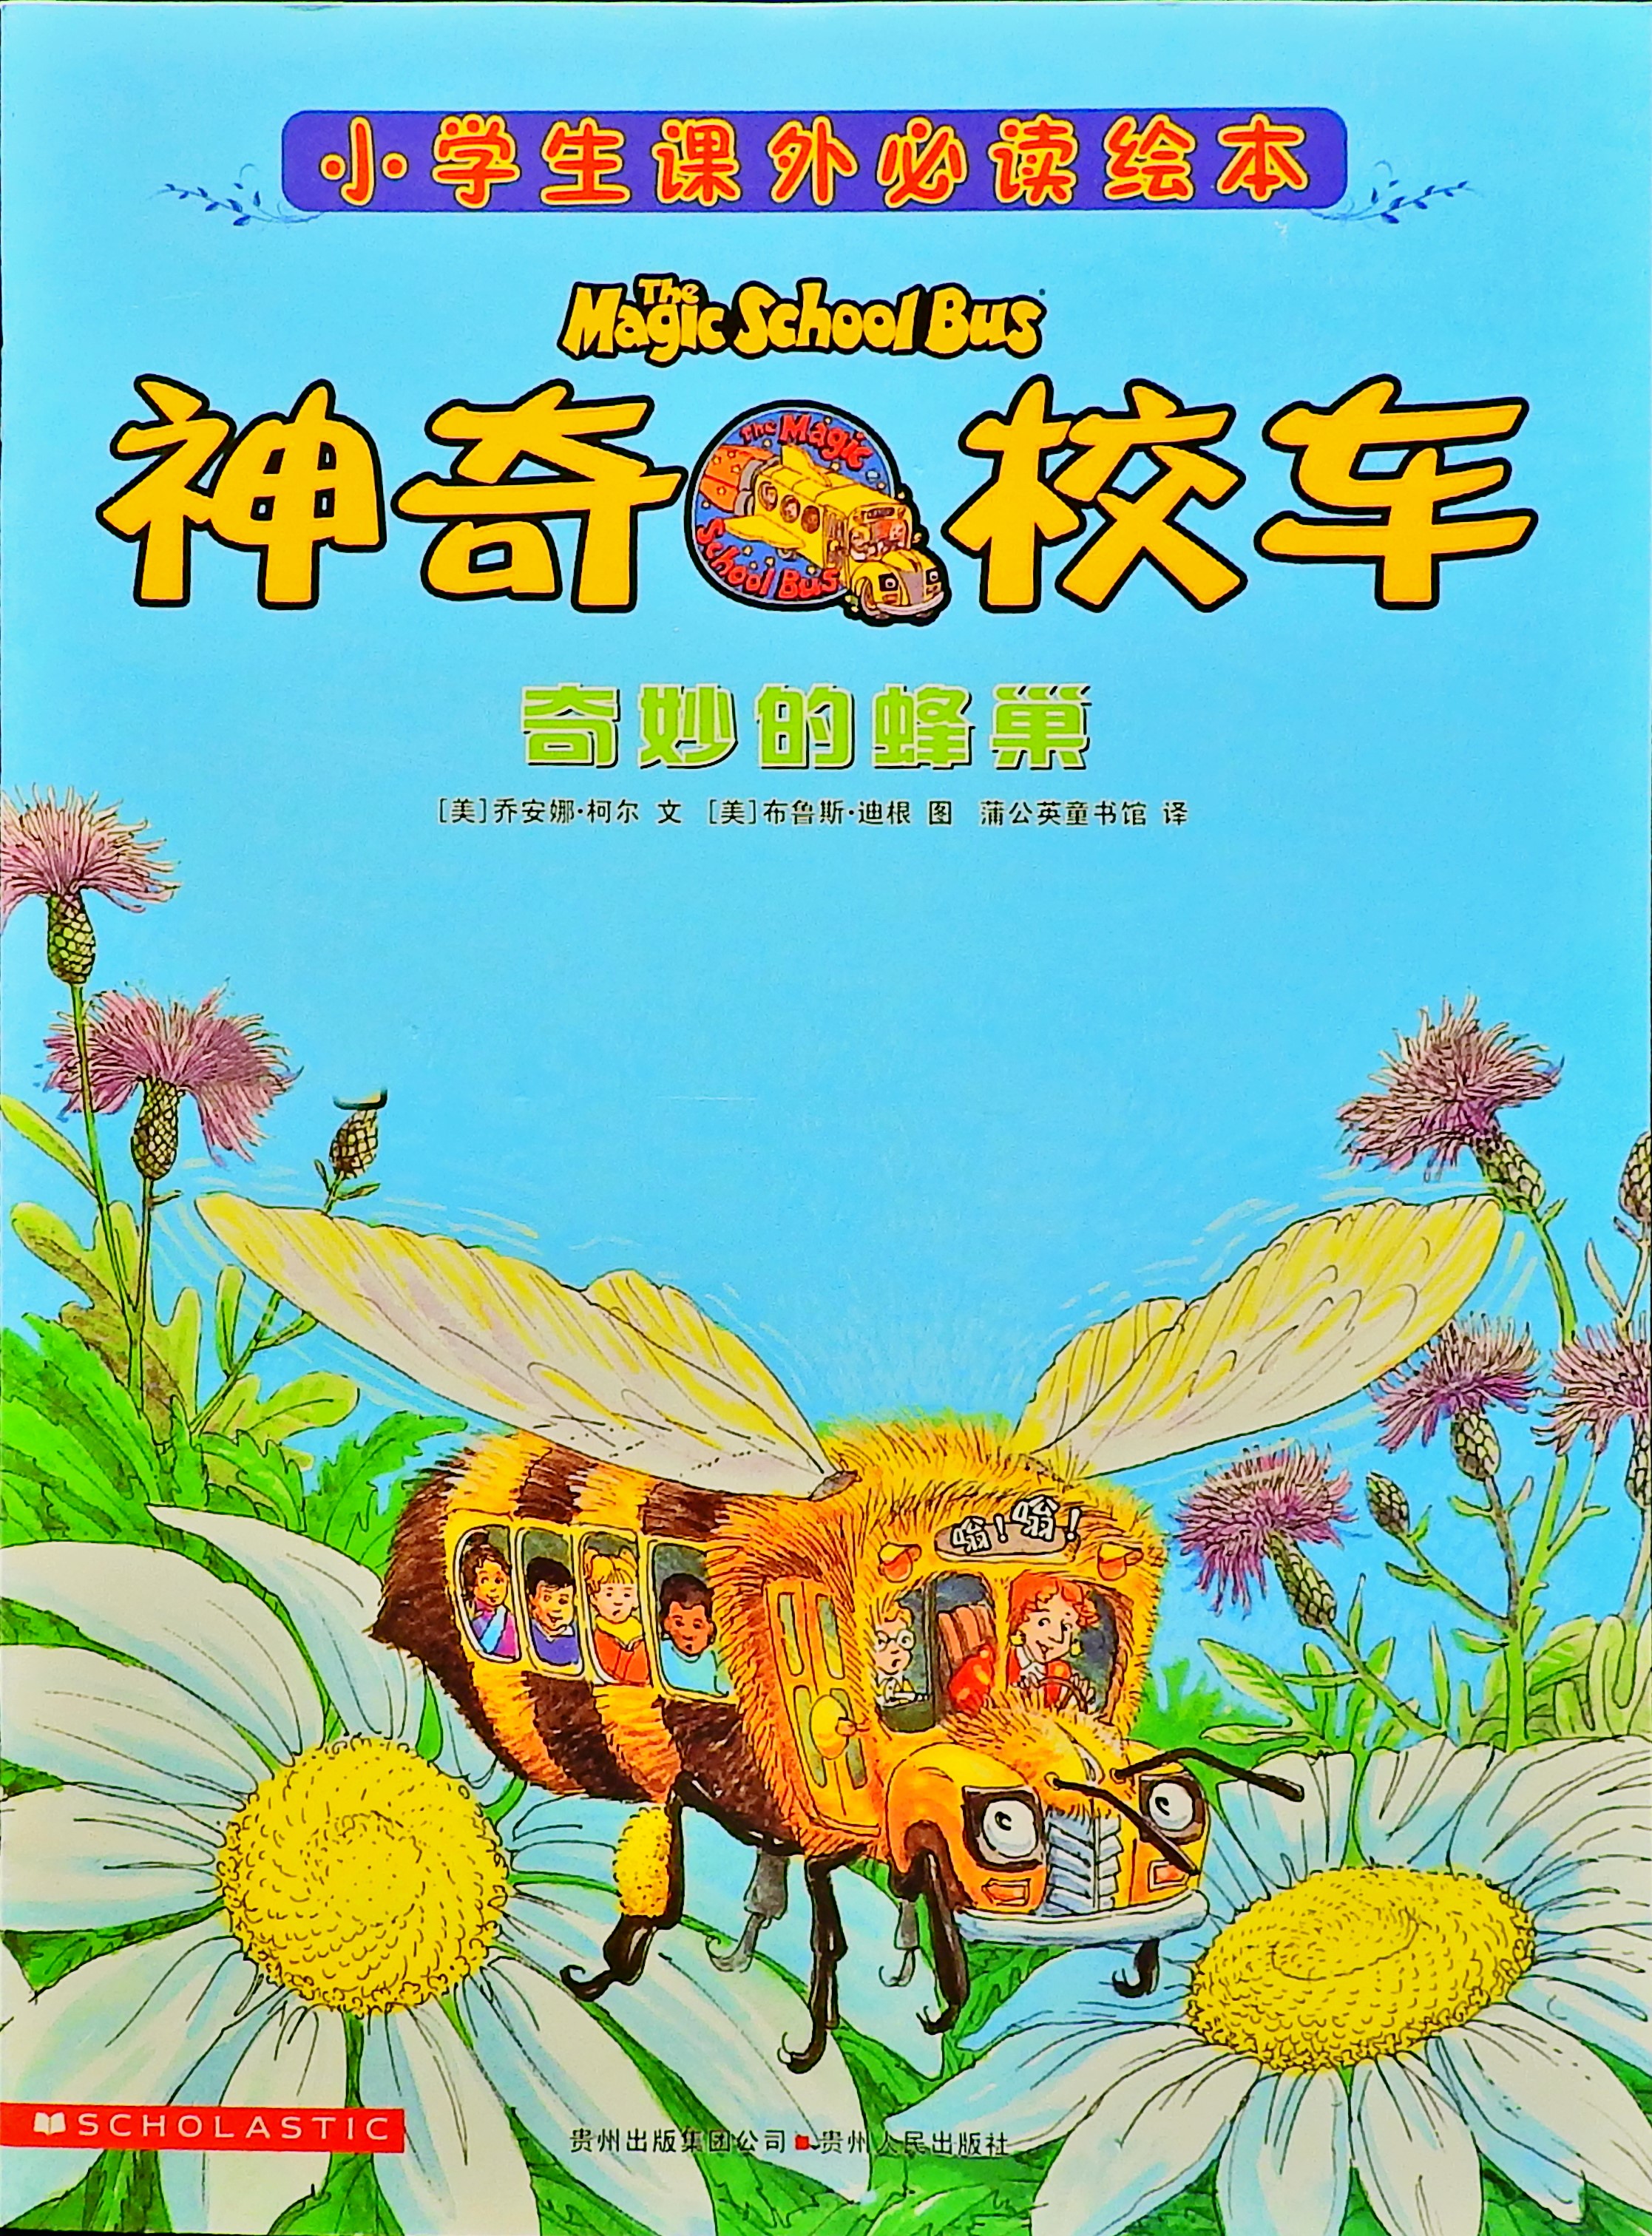 奇妙的蜂巢 (01),绘本,绘本故事,绘本阅读,故事书,童书,图画书,课外阅读